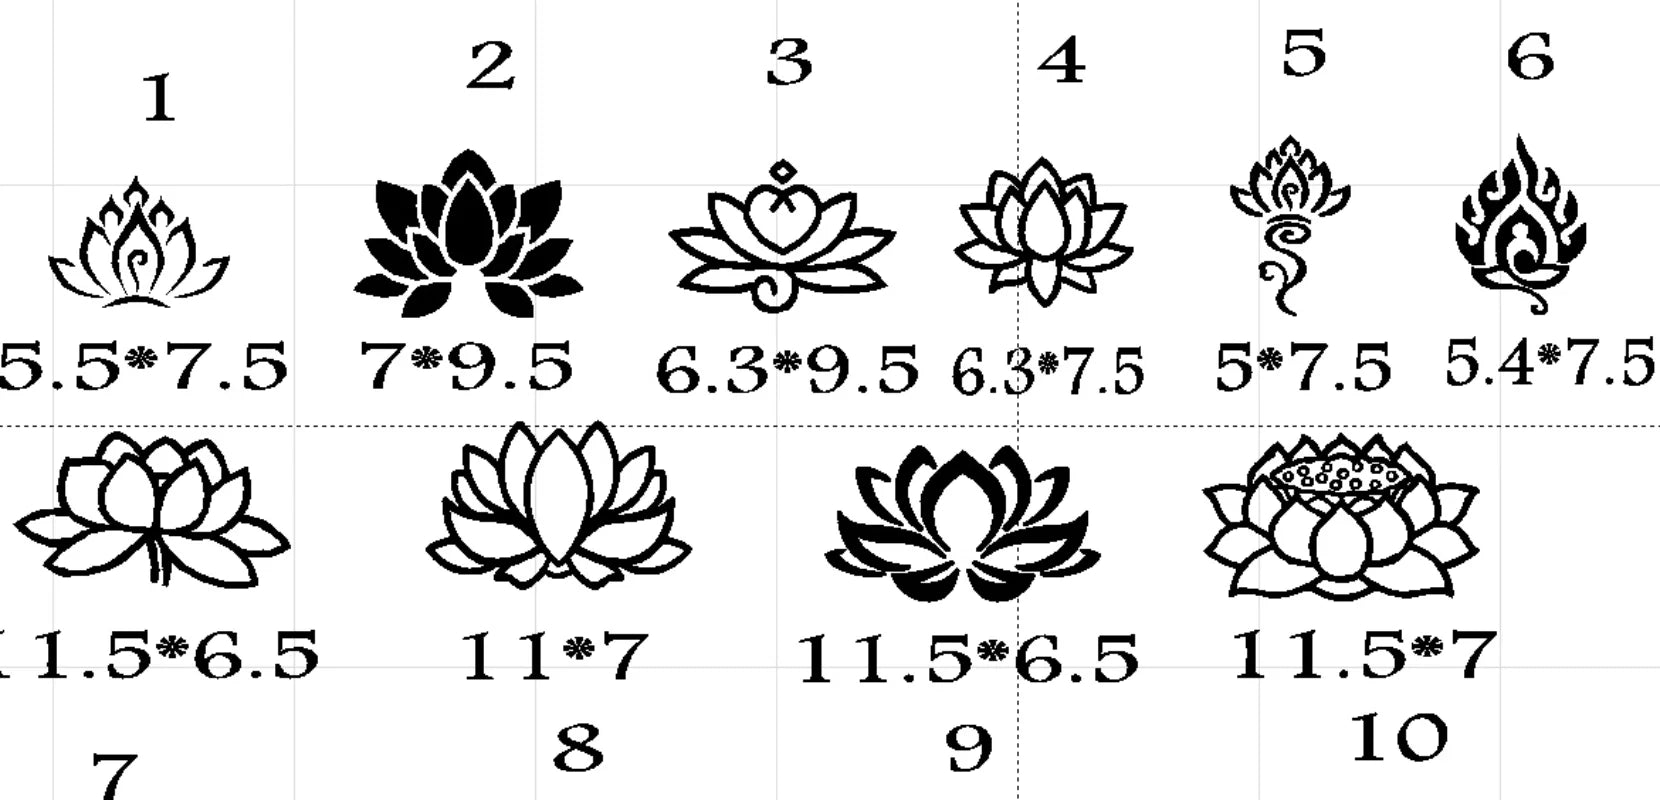 1PC Lotus Flower Pattern Jewelry Stamp Metal Stamping Tool